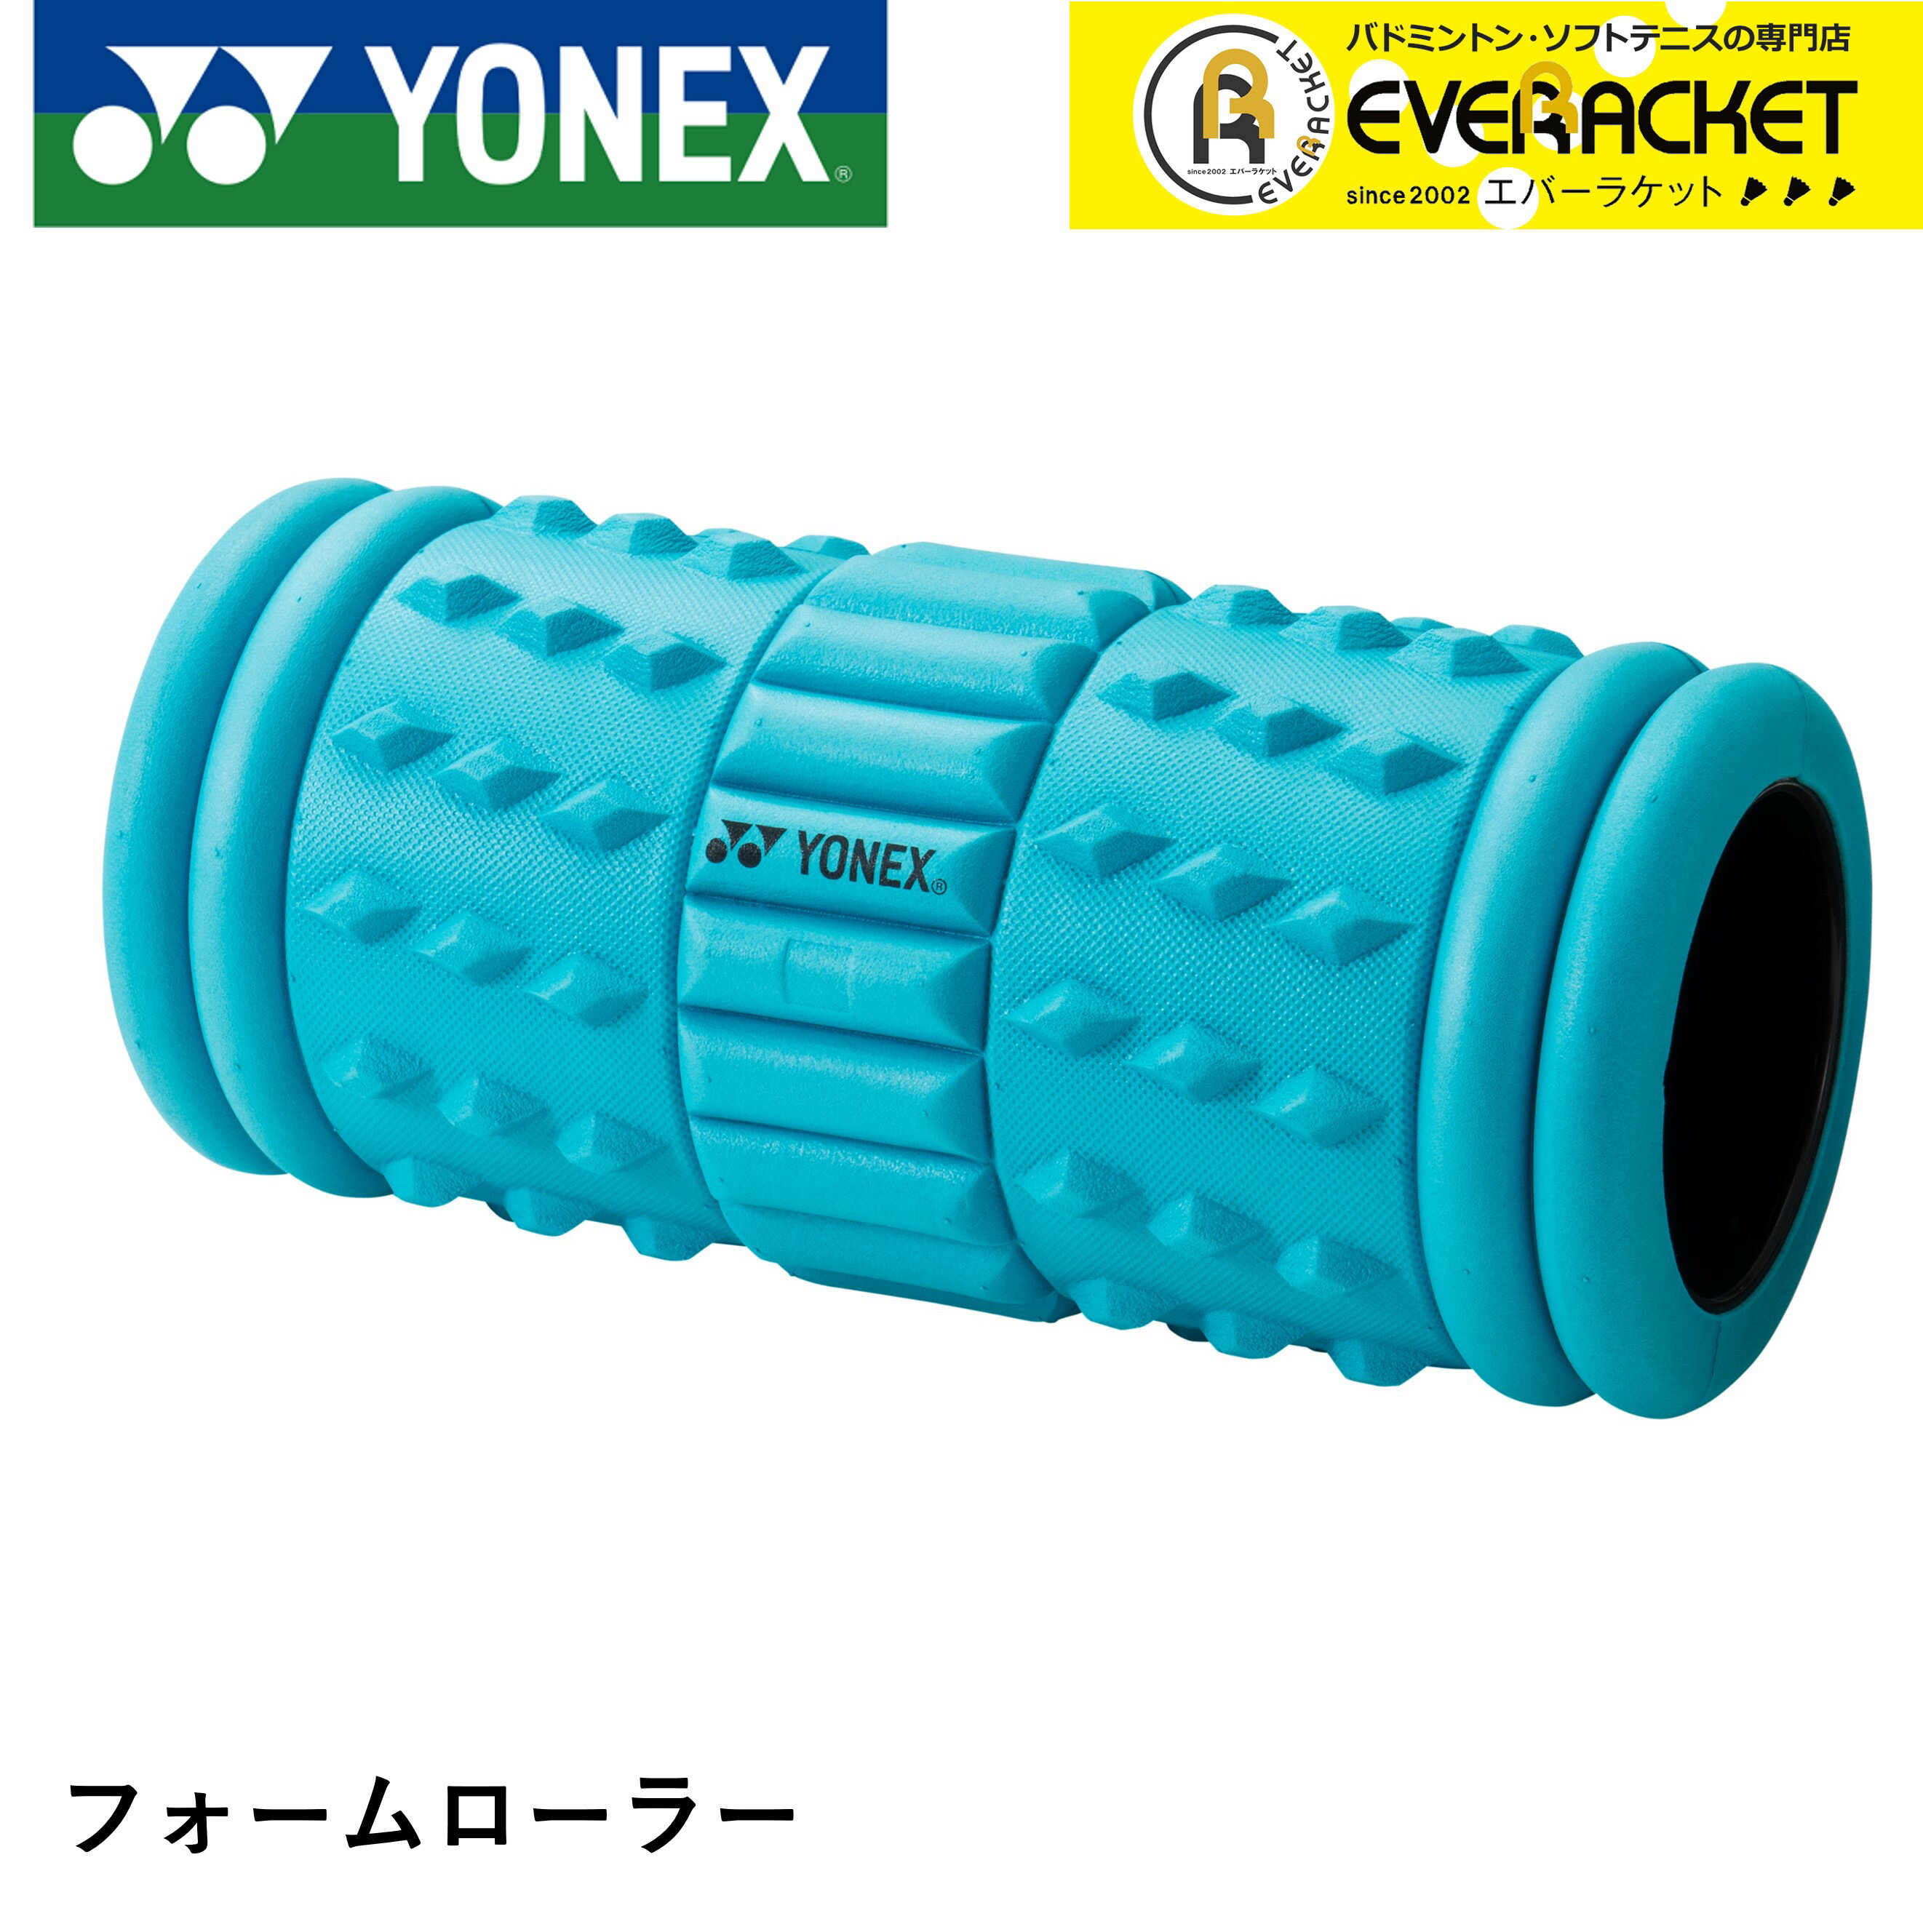 ヨネックス YONEX アクセサリー フォームローラー AC513 バドミントン・テニス 筋膜リリース